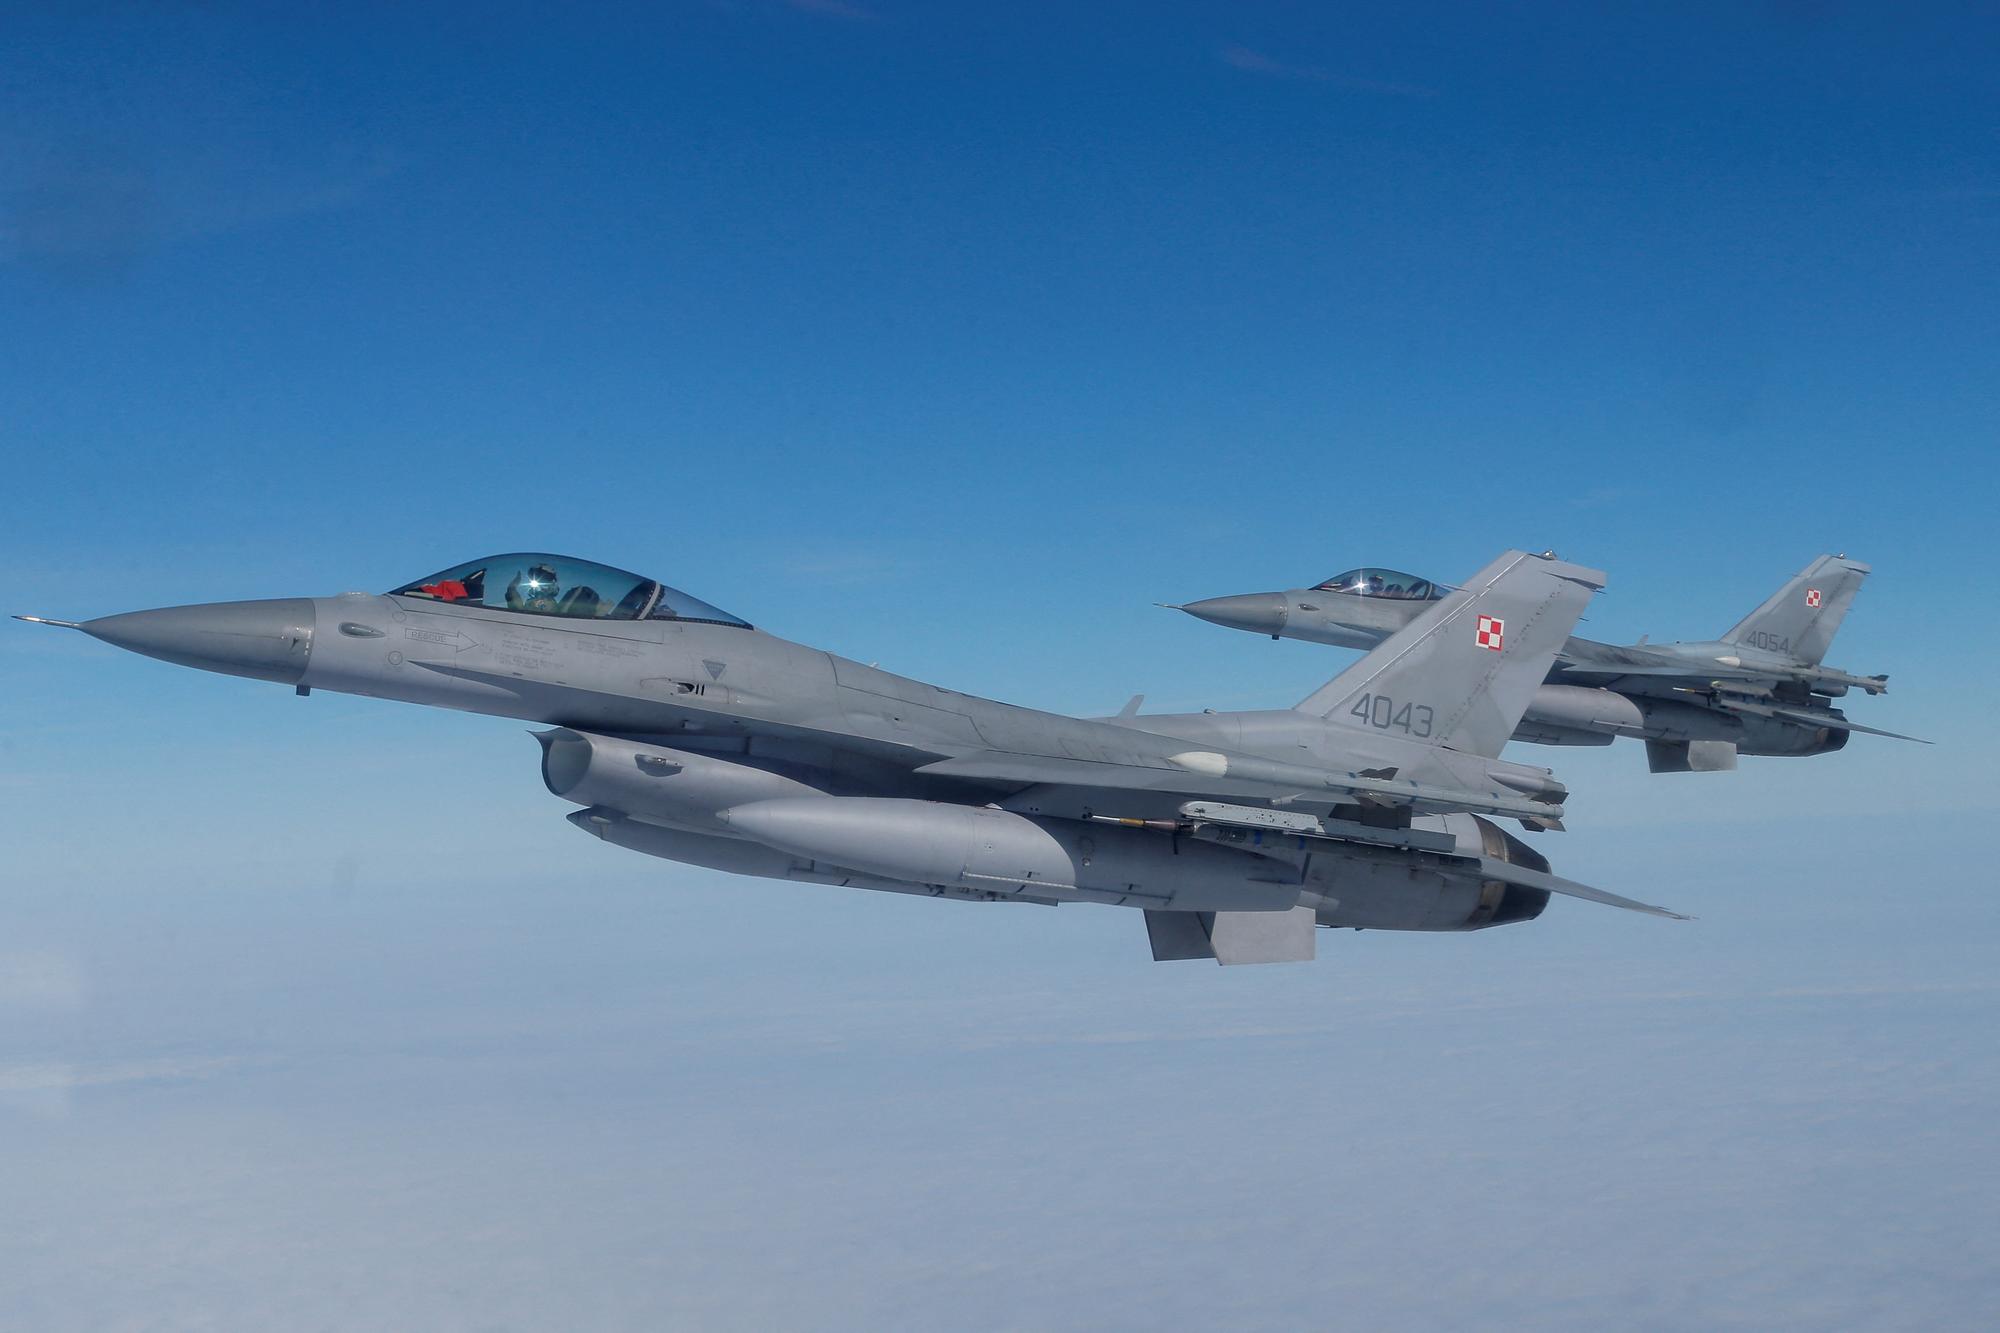 Des avions F-16 de l'Otan photographiés lors d'une démonstration au-dessus de la base aérienne de Malbork, en Pologne, le 21 mars 2023. [reuters - Lukasz Glowala]